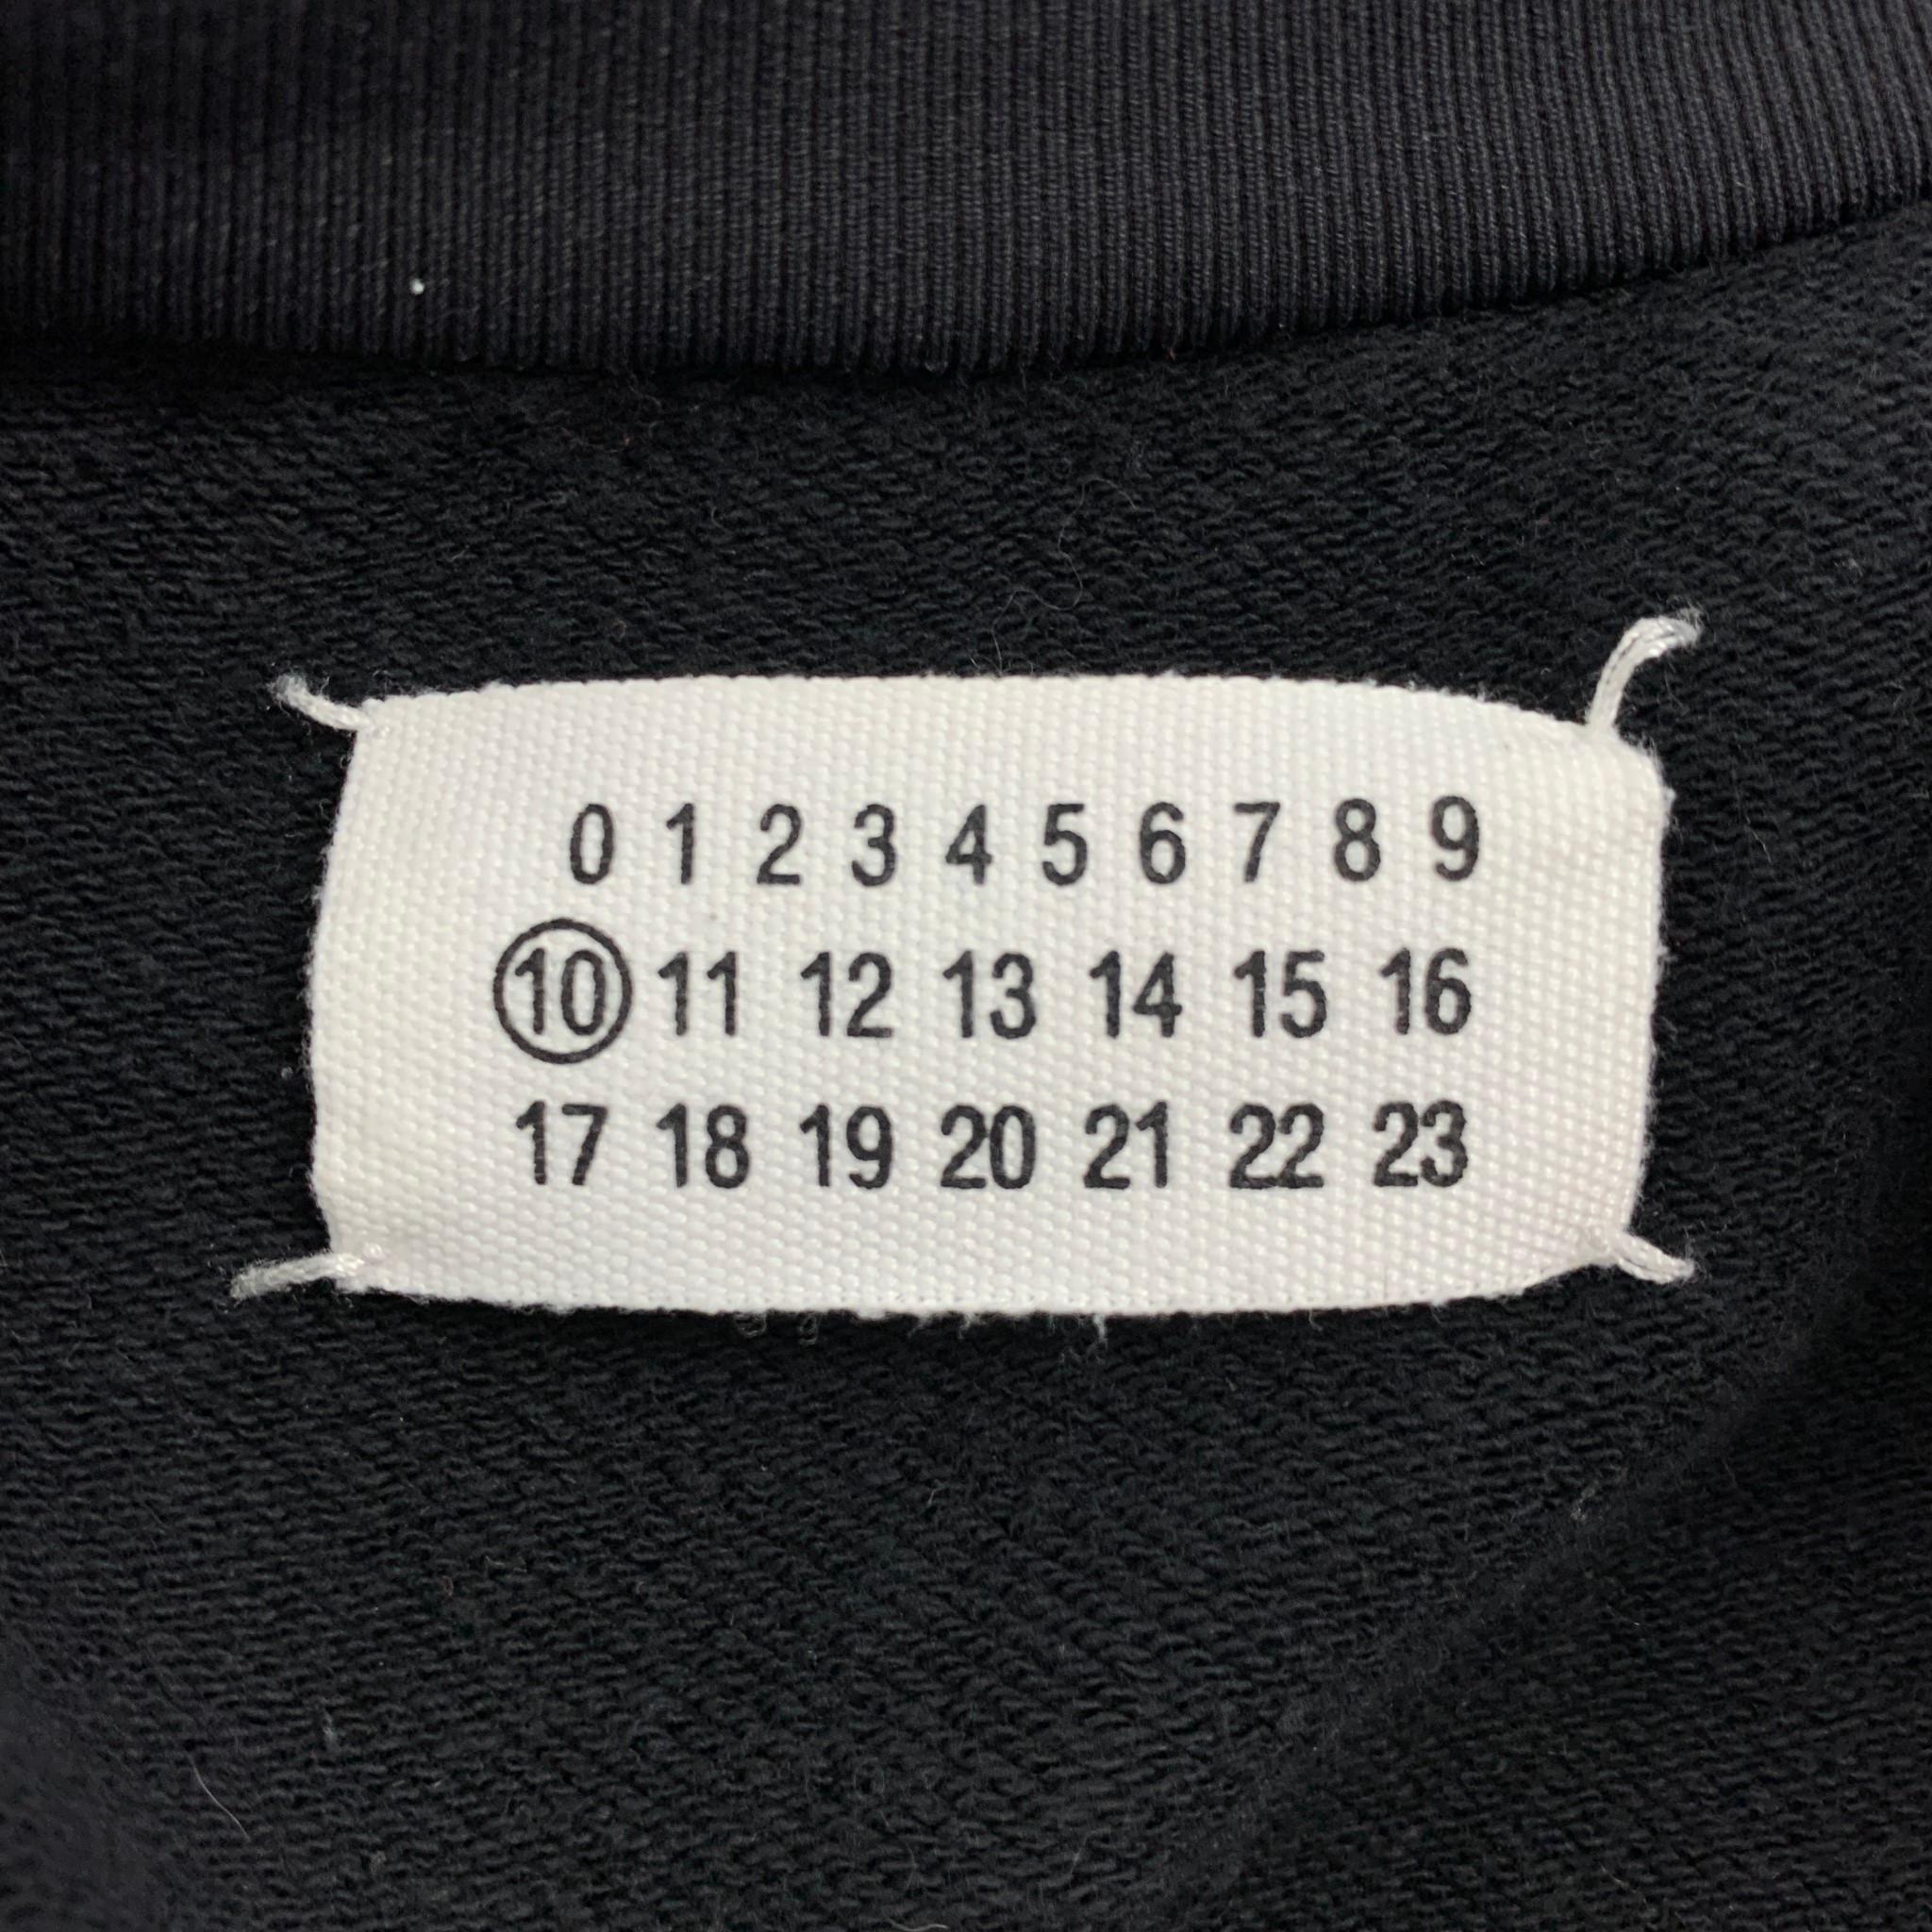 MAISON MARGIELA Size 42 Black & Blue Color Block Cotton / Nylon Sweatshirt 2